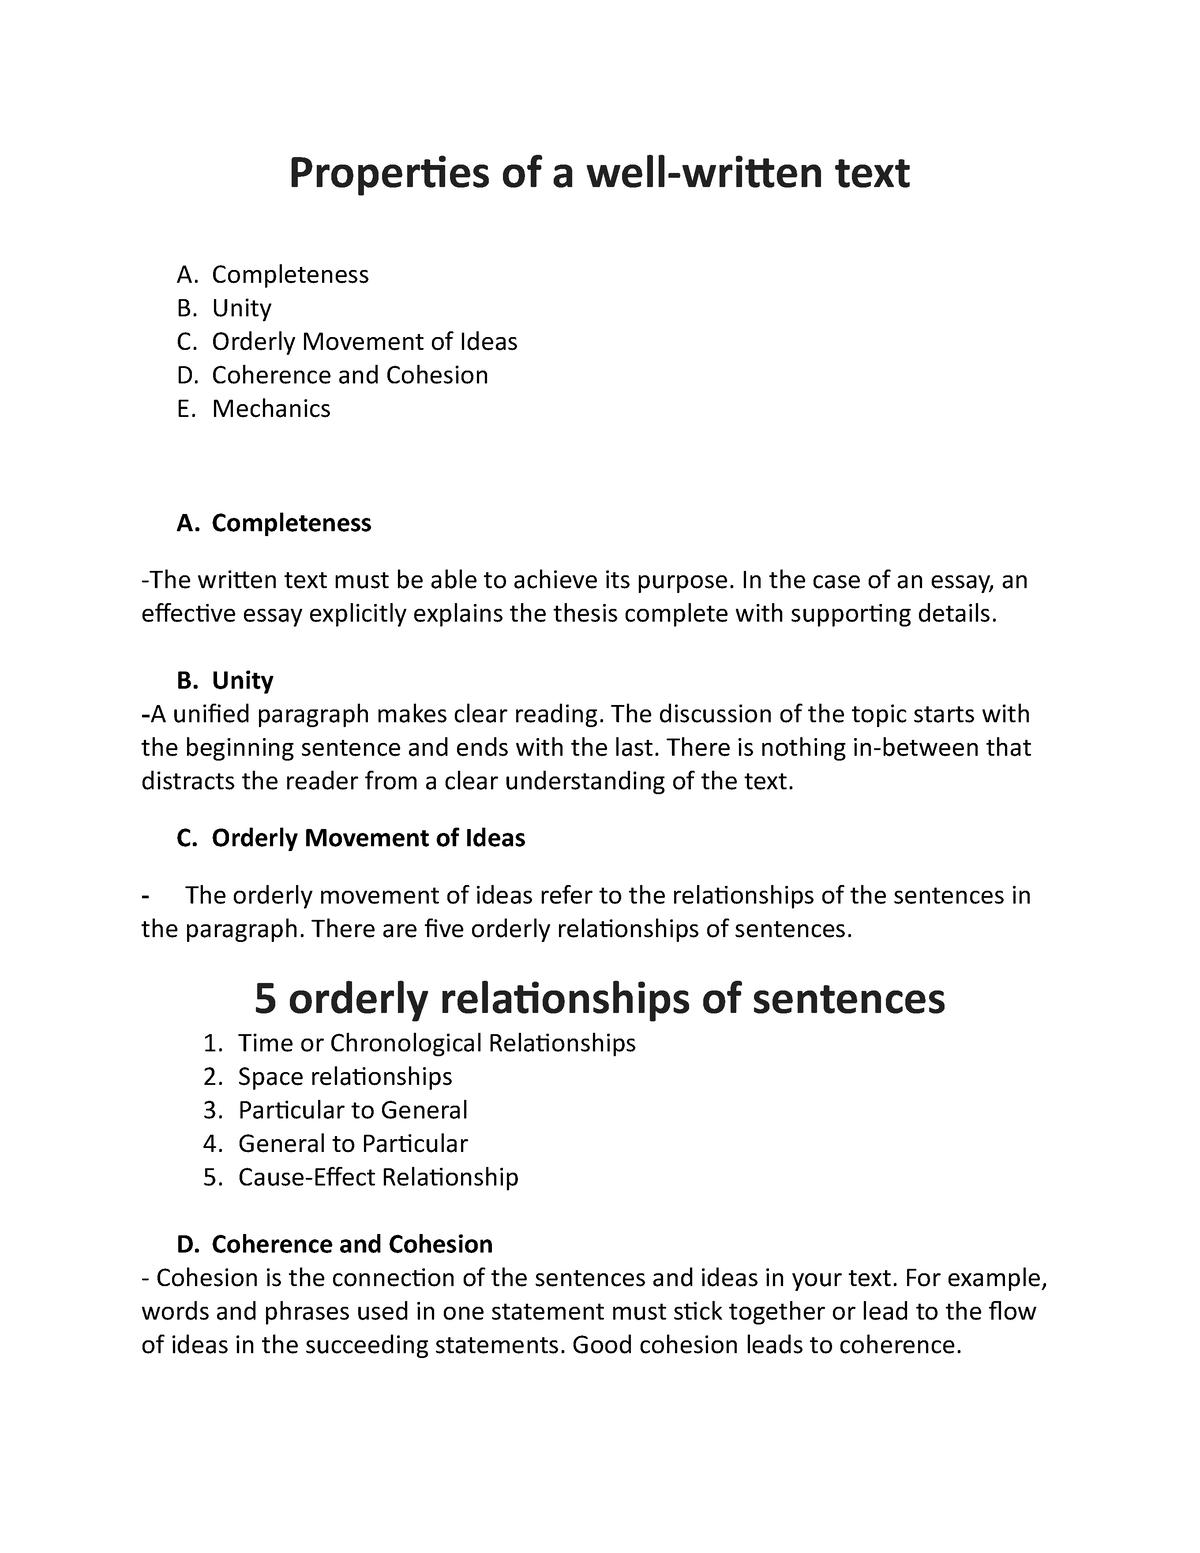 properties of well written text essay